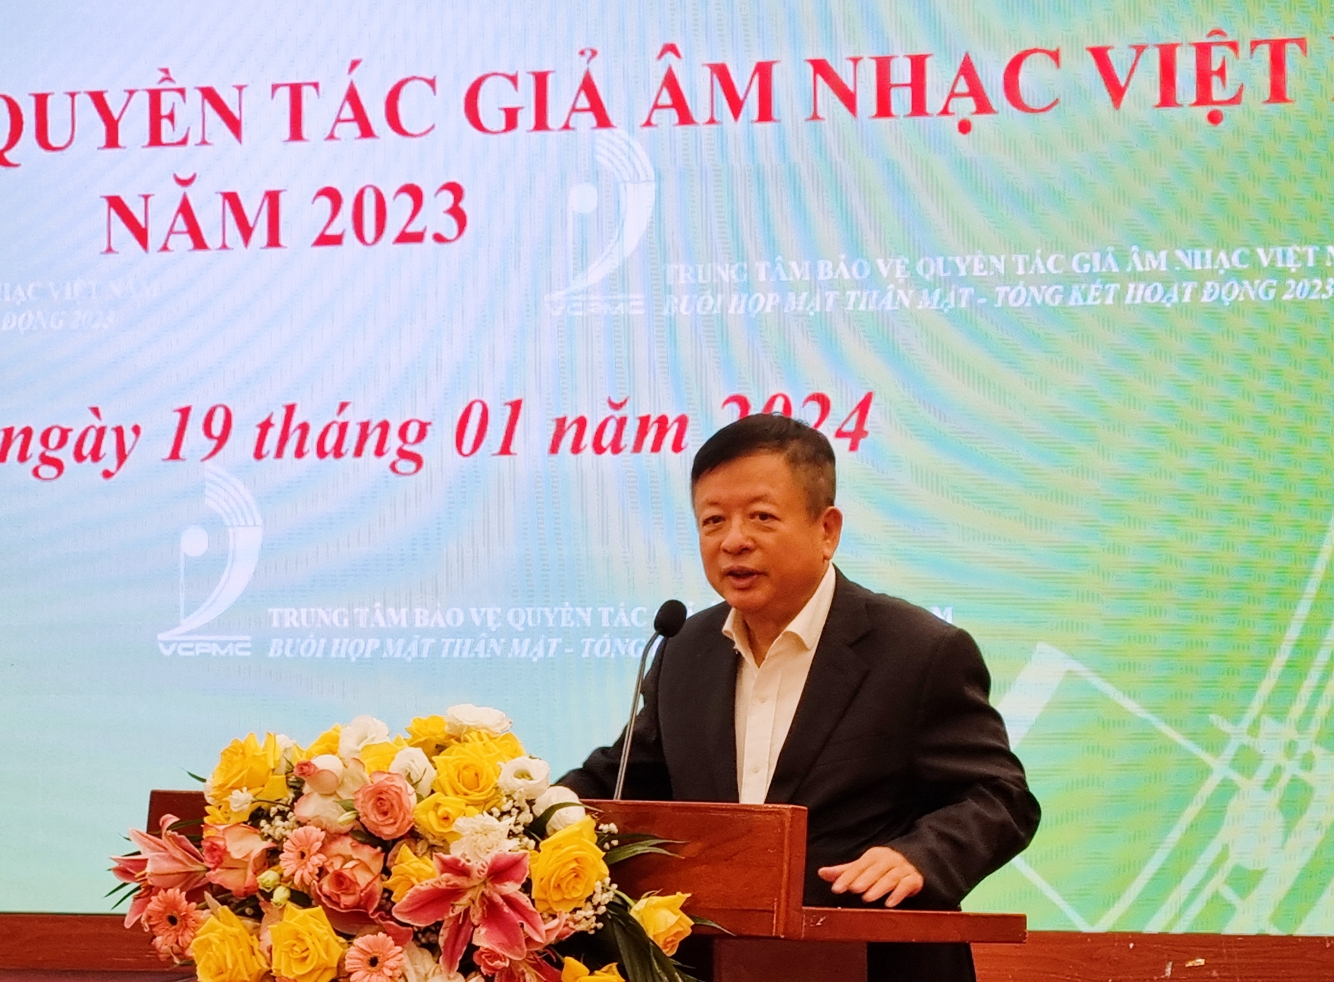 Bức tranh toàn cảnh nhiều điểm sáng của Trung tâm bảo vệ quyền tác giả âm nhạc Việt Nam năm 2023 - 3